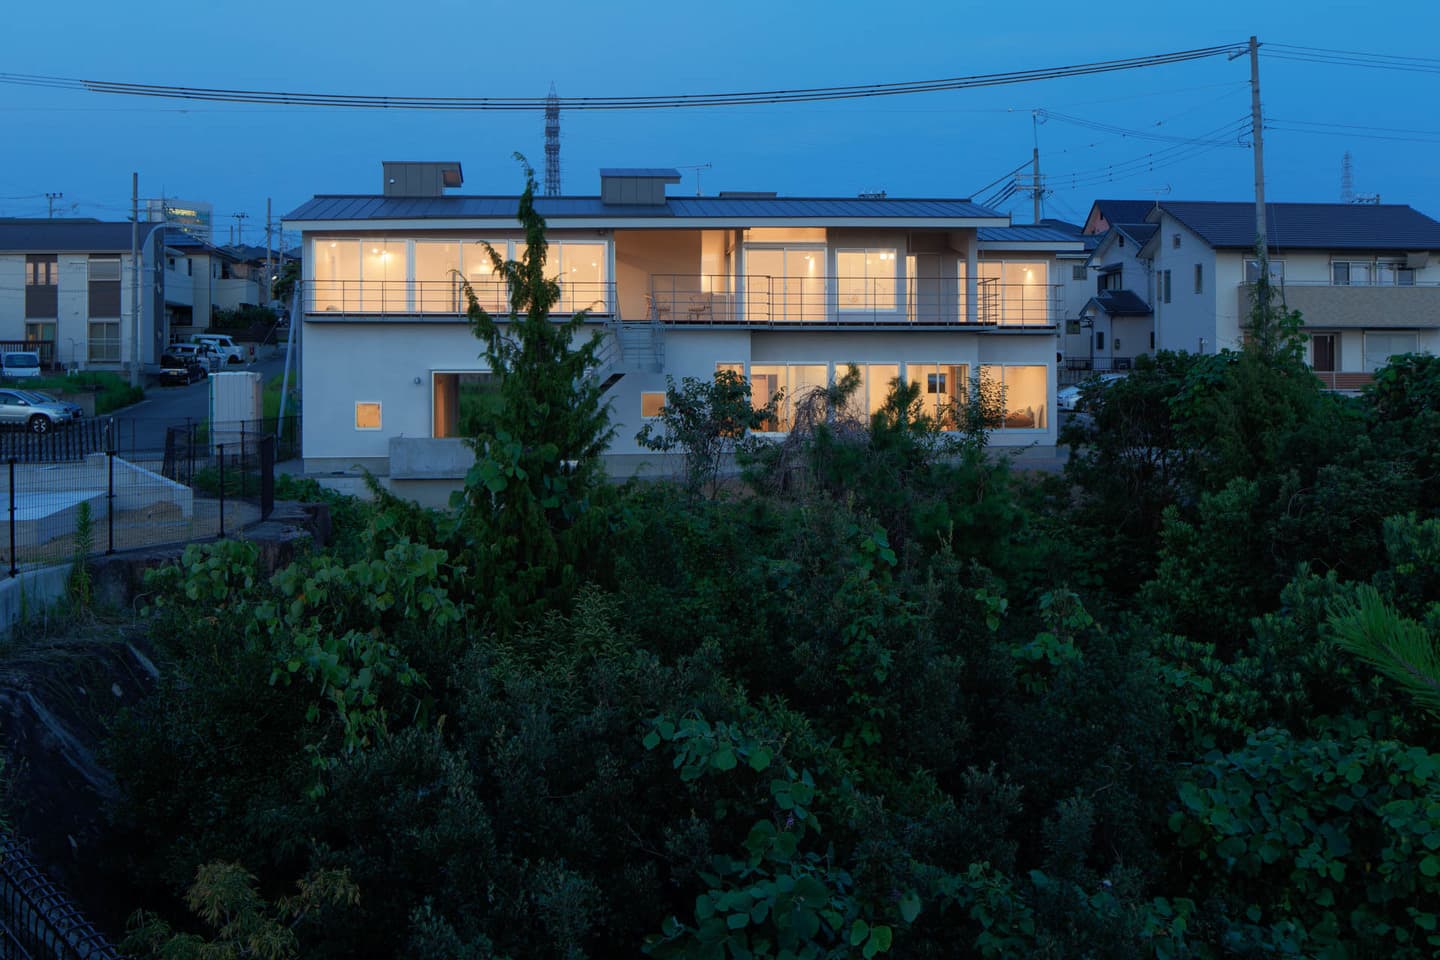 大阪の建築家・中平勝が設計した眺めの良い住宅